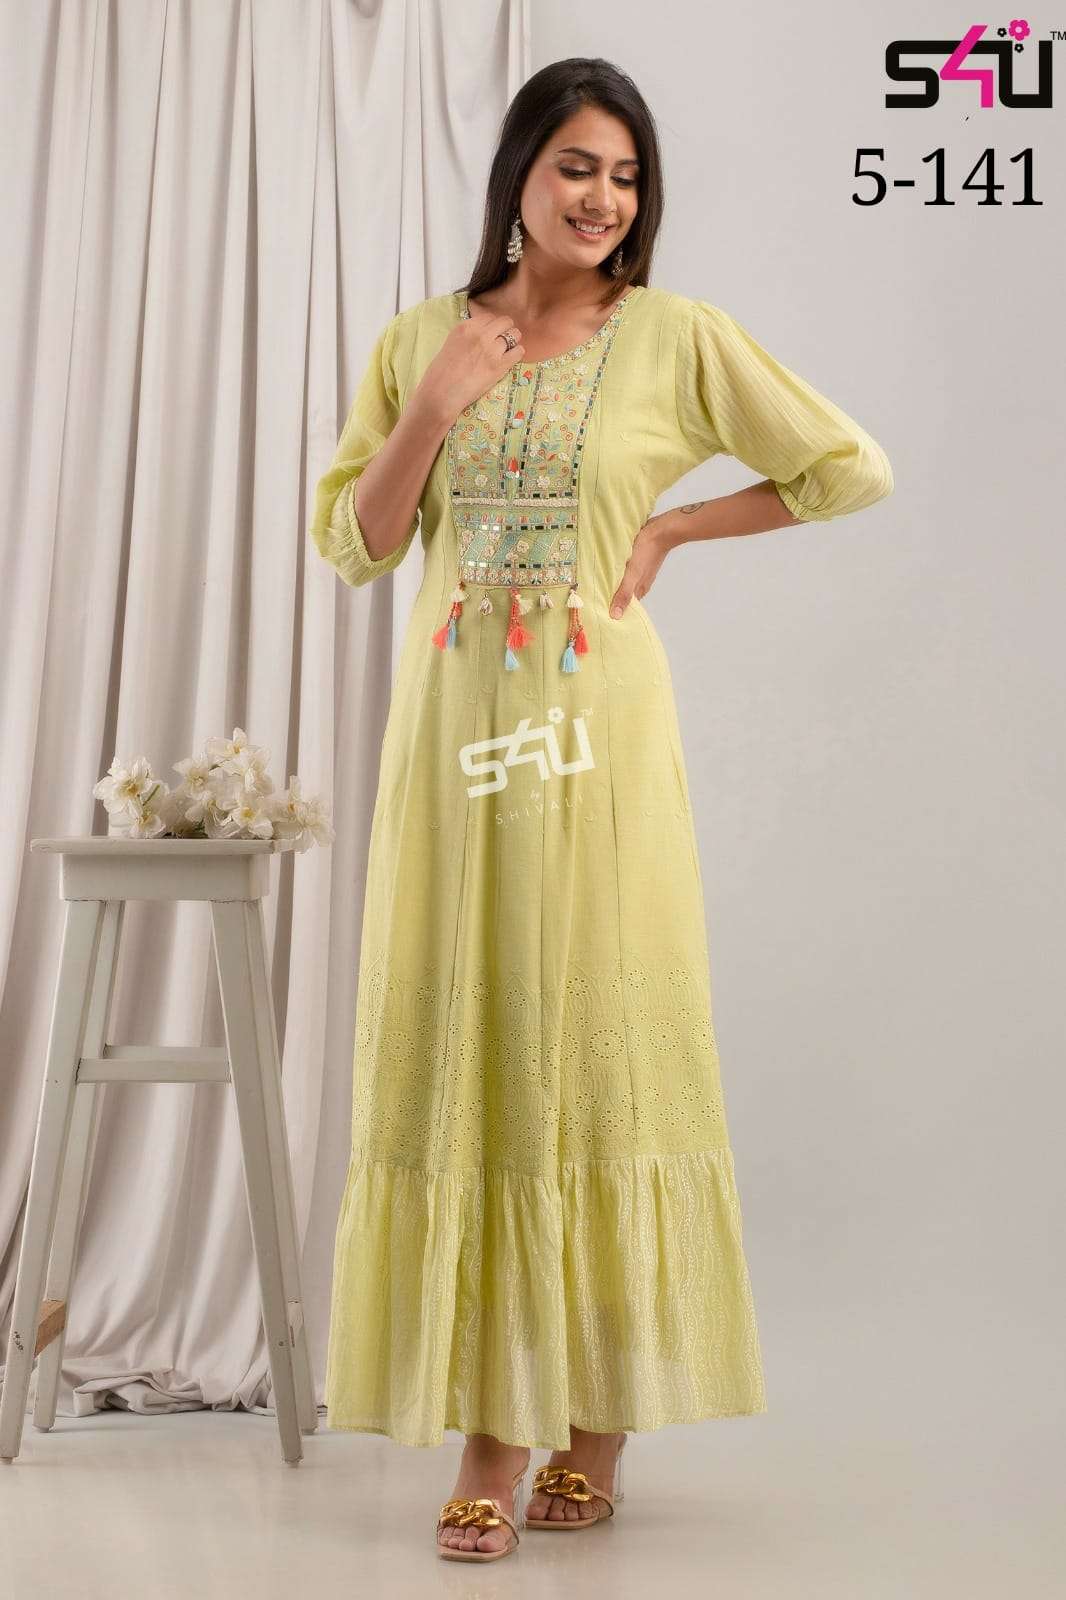 S4U 5-141 Festive Wear Long Kurti Gown New Designs